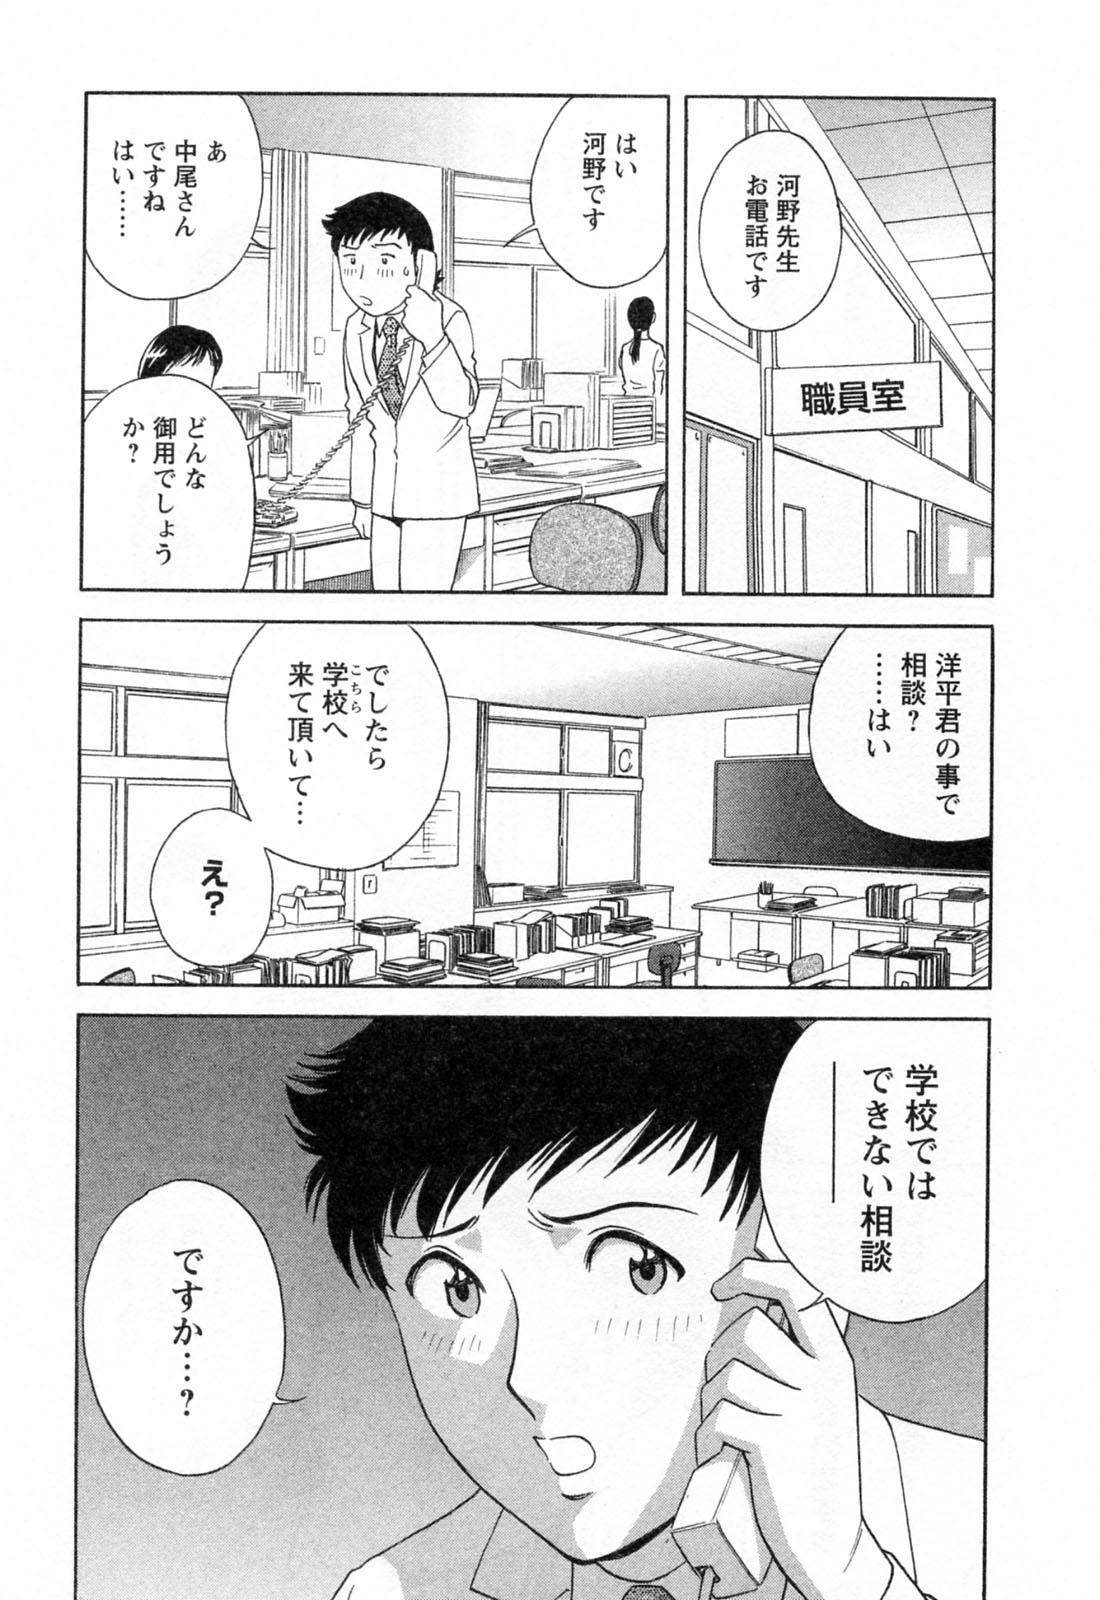 [Hidemaru] Mo-Retsu! Boin Sensei (Boing Boing Teacher) Vol.4 56